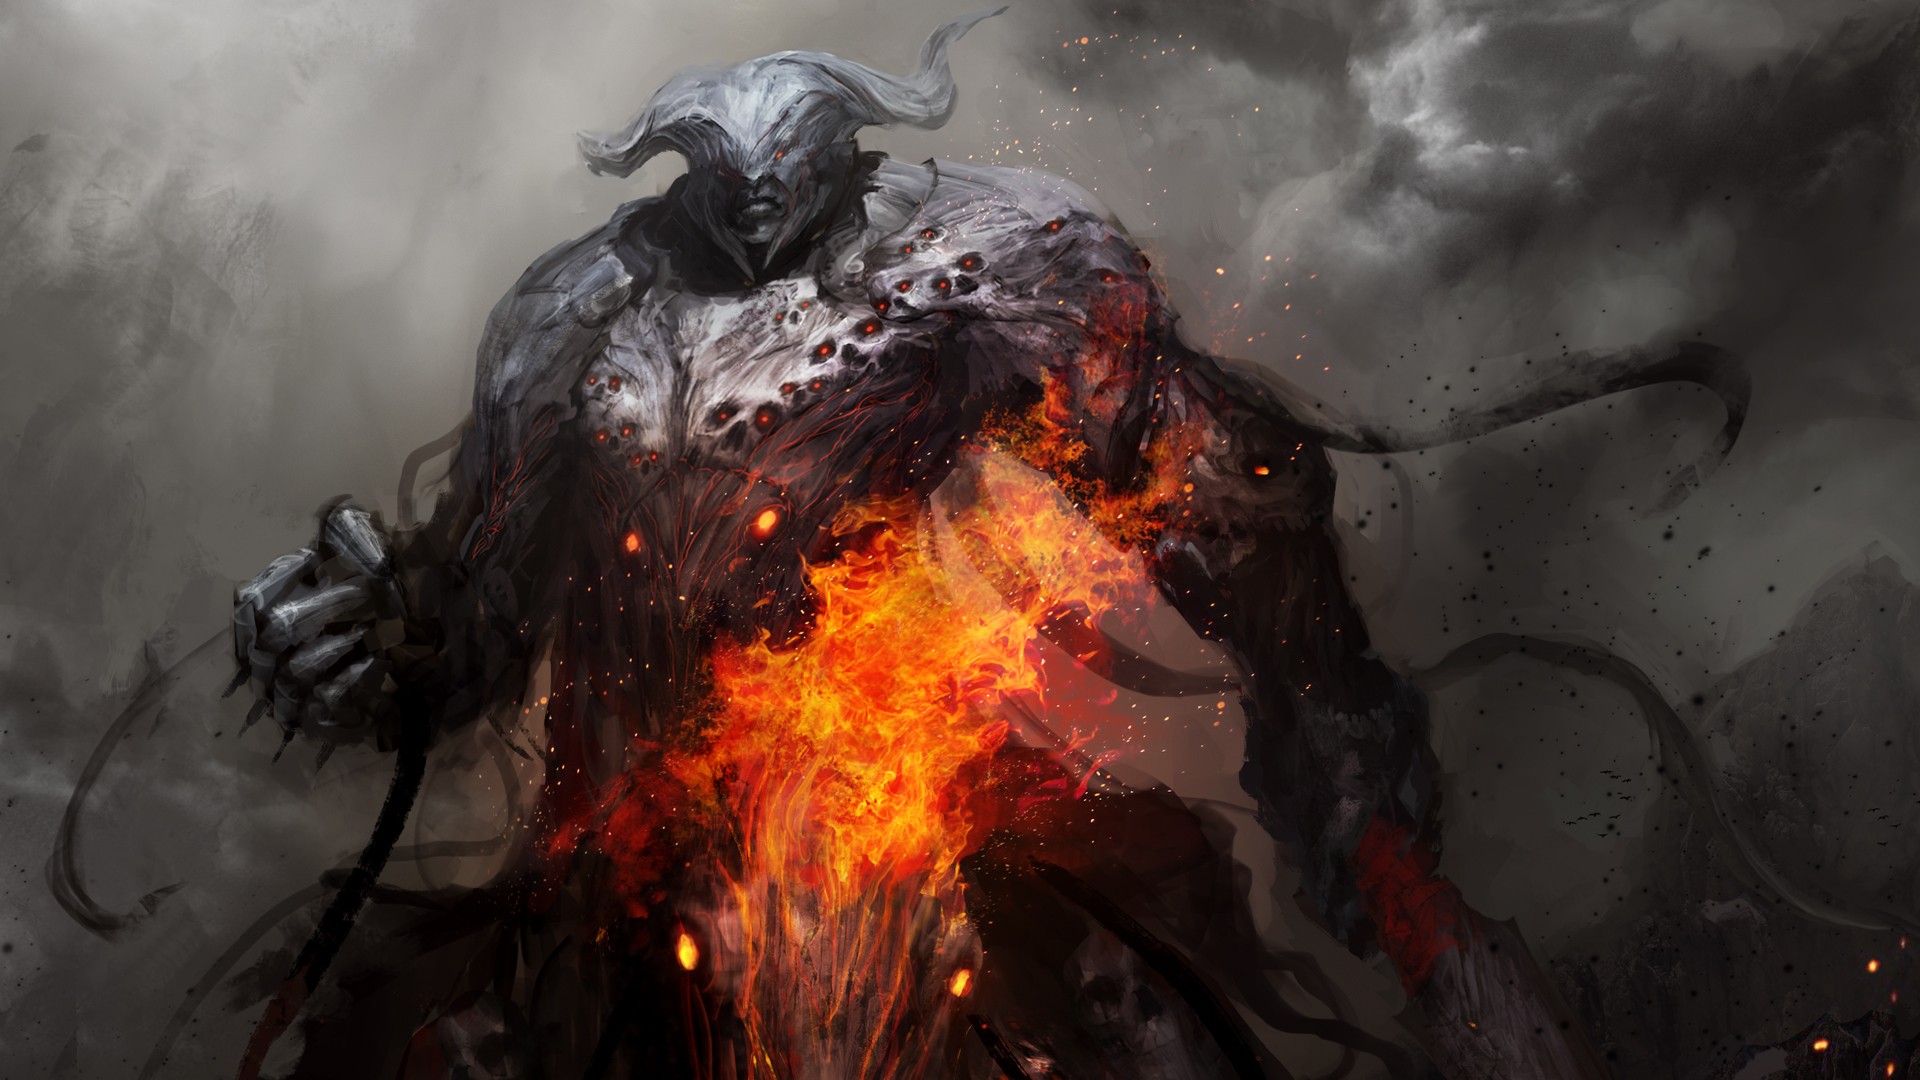 Warrior Demon Stone Fire Souls War Fantasy Art Dark Fantasy Four Horsemen Of The Apocalypse 1920x1080